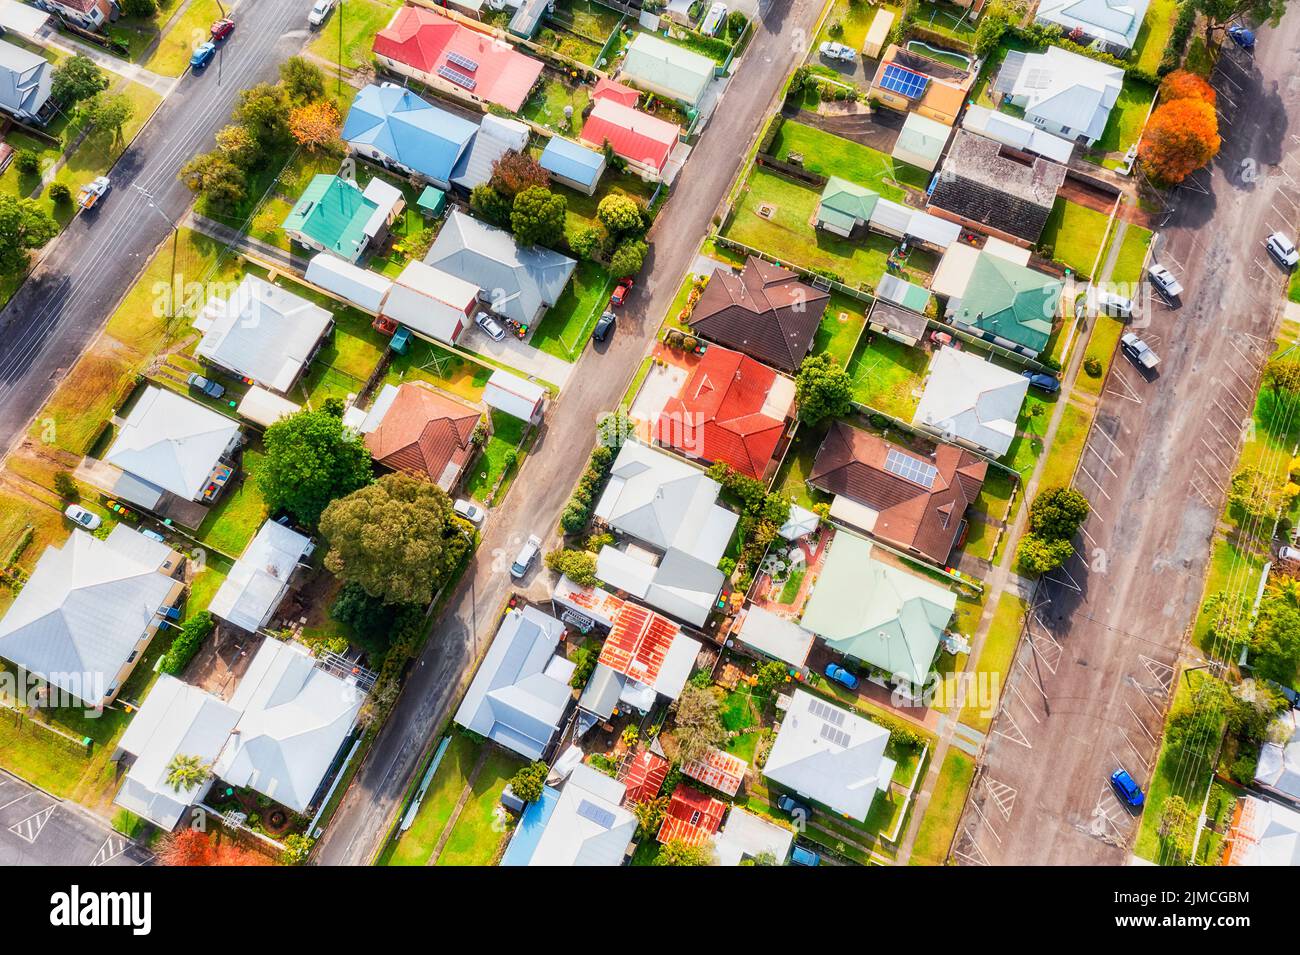 Banlieues avec maisons indépendantes sur des rues résidentielles calmes dans la ville rurale régionale d'Australie - vue aérienne de dessus en bas. Banque D'Images